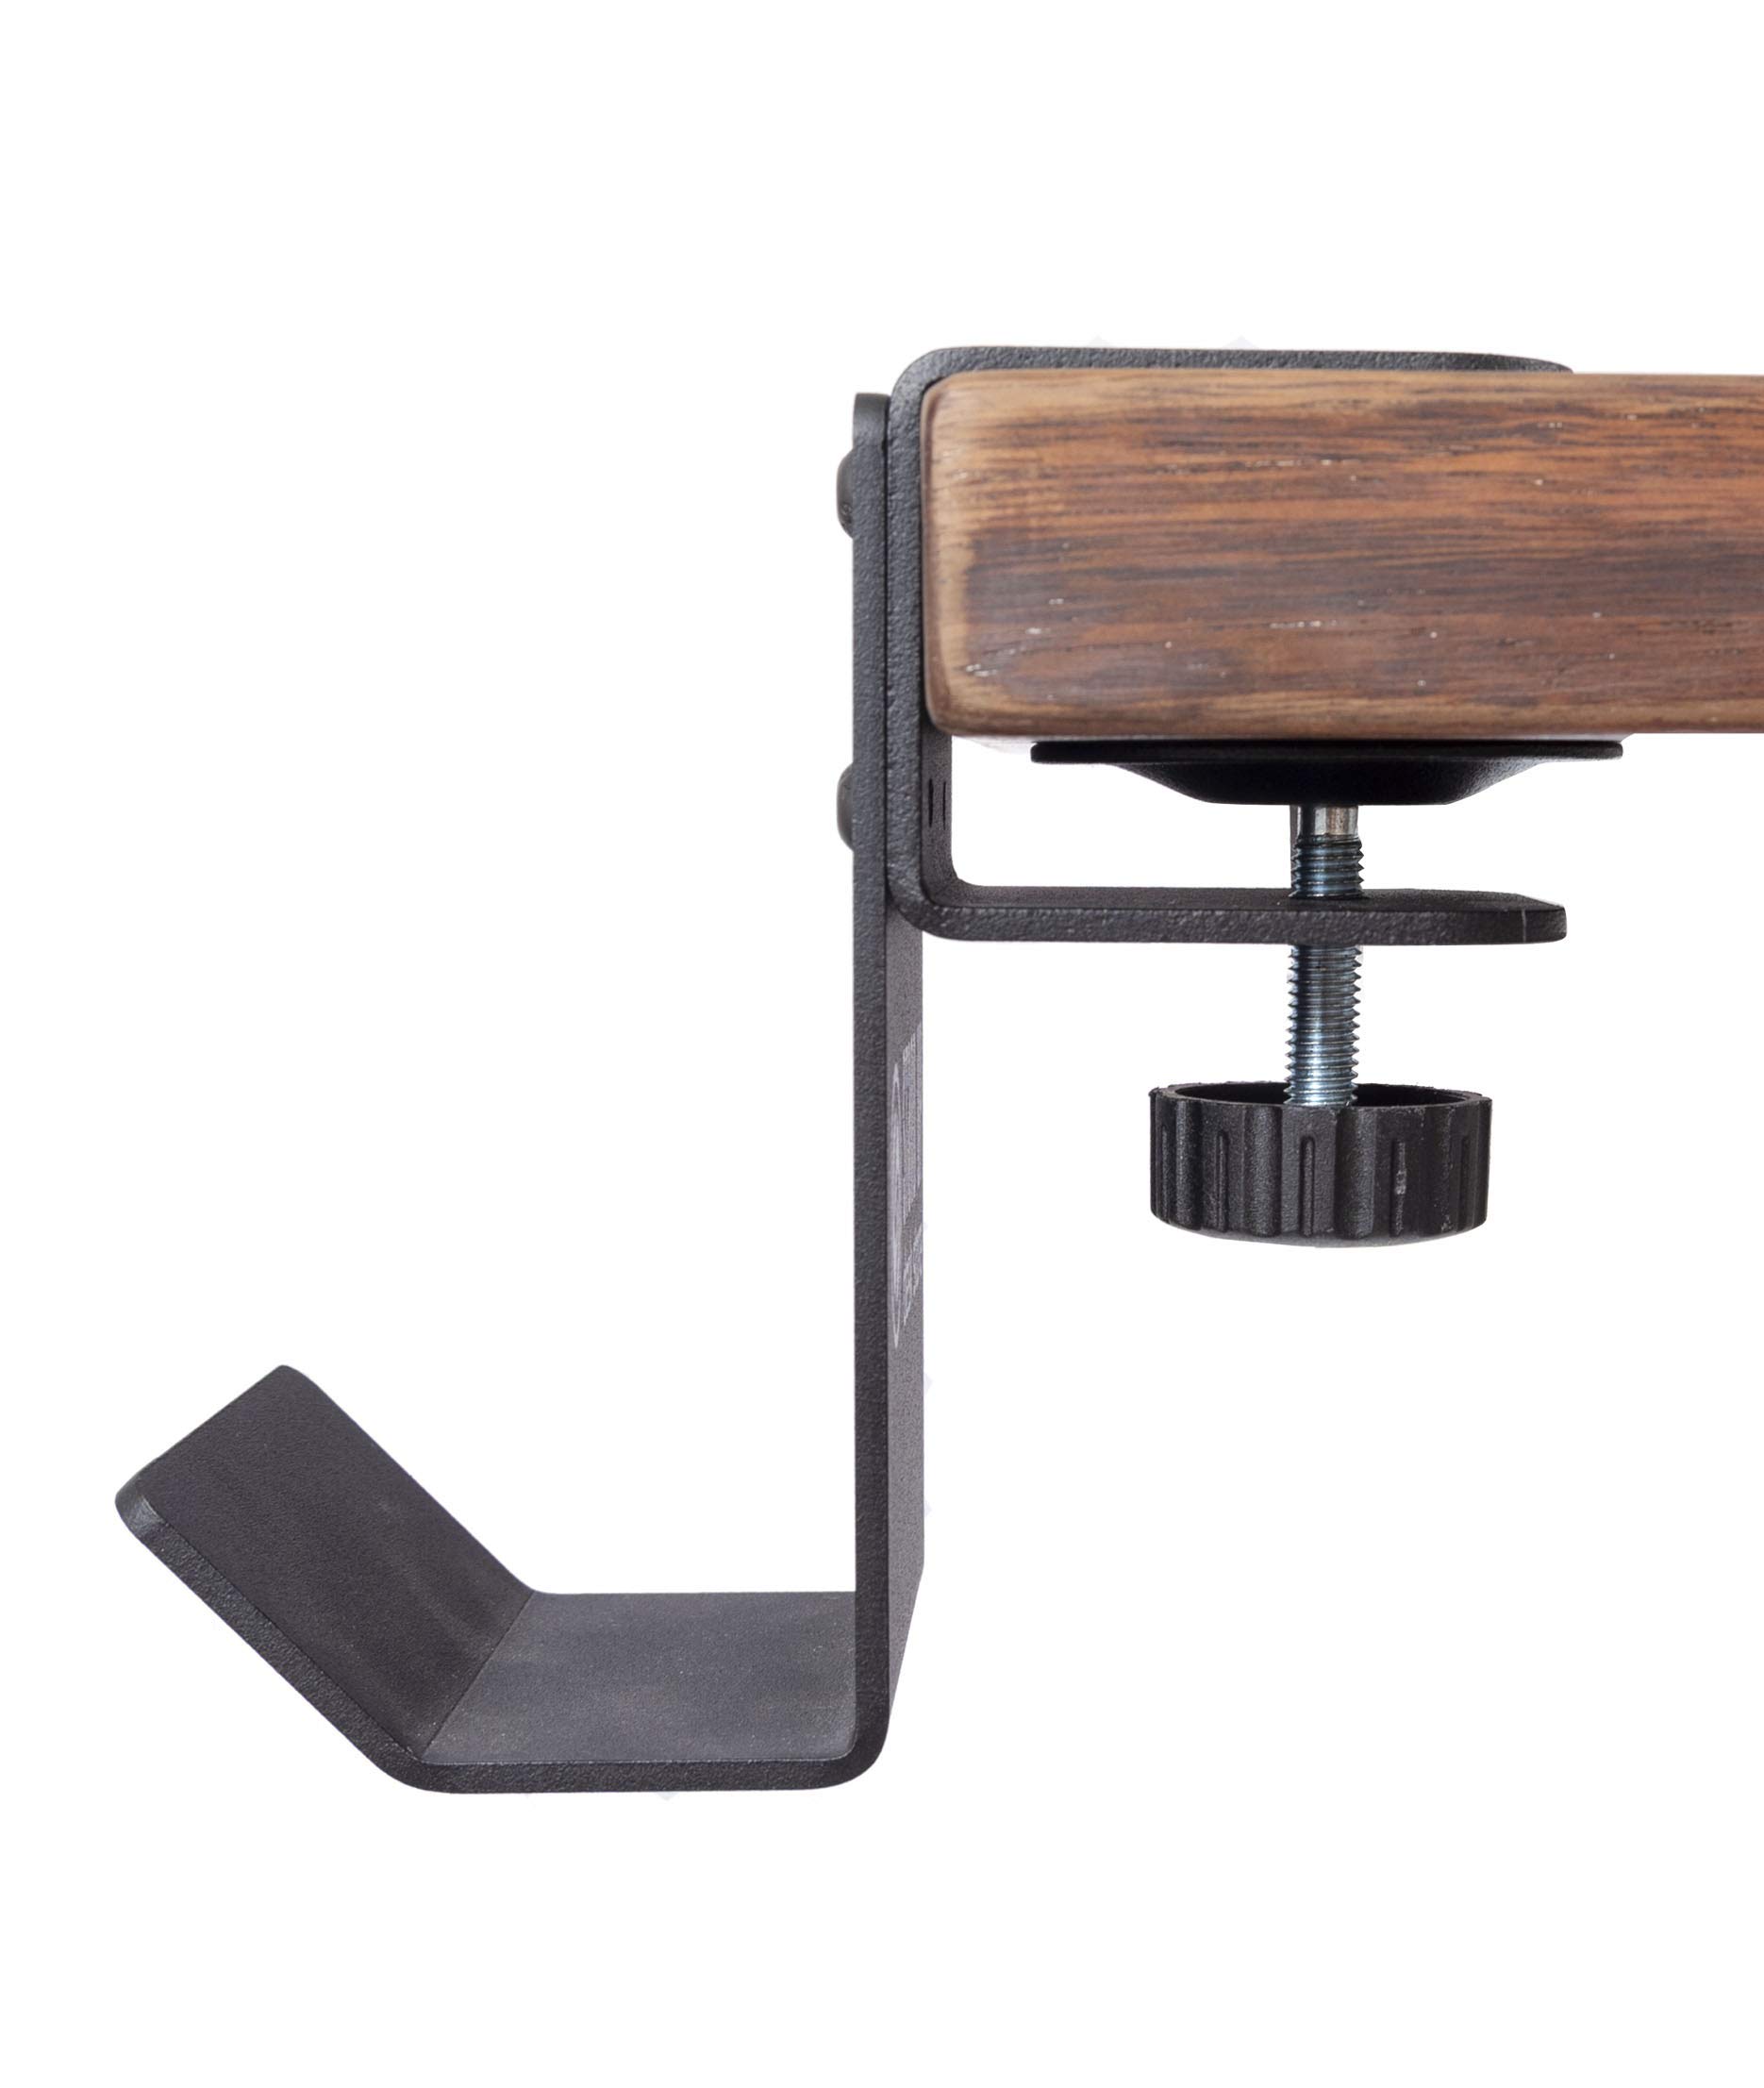 Stand Up Desk Store Clamp-On Under Desk Headphone Hook, Backpack Hook, and Purse Hook for Desk - Black